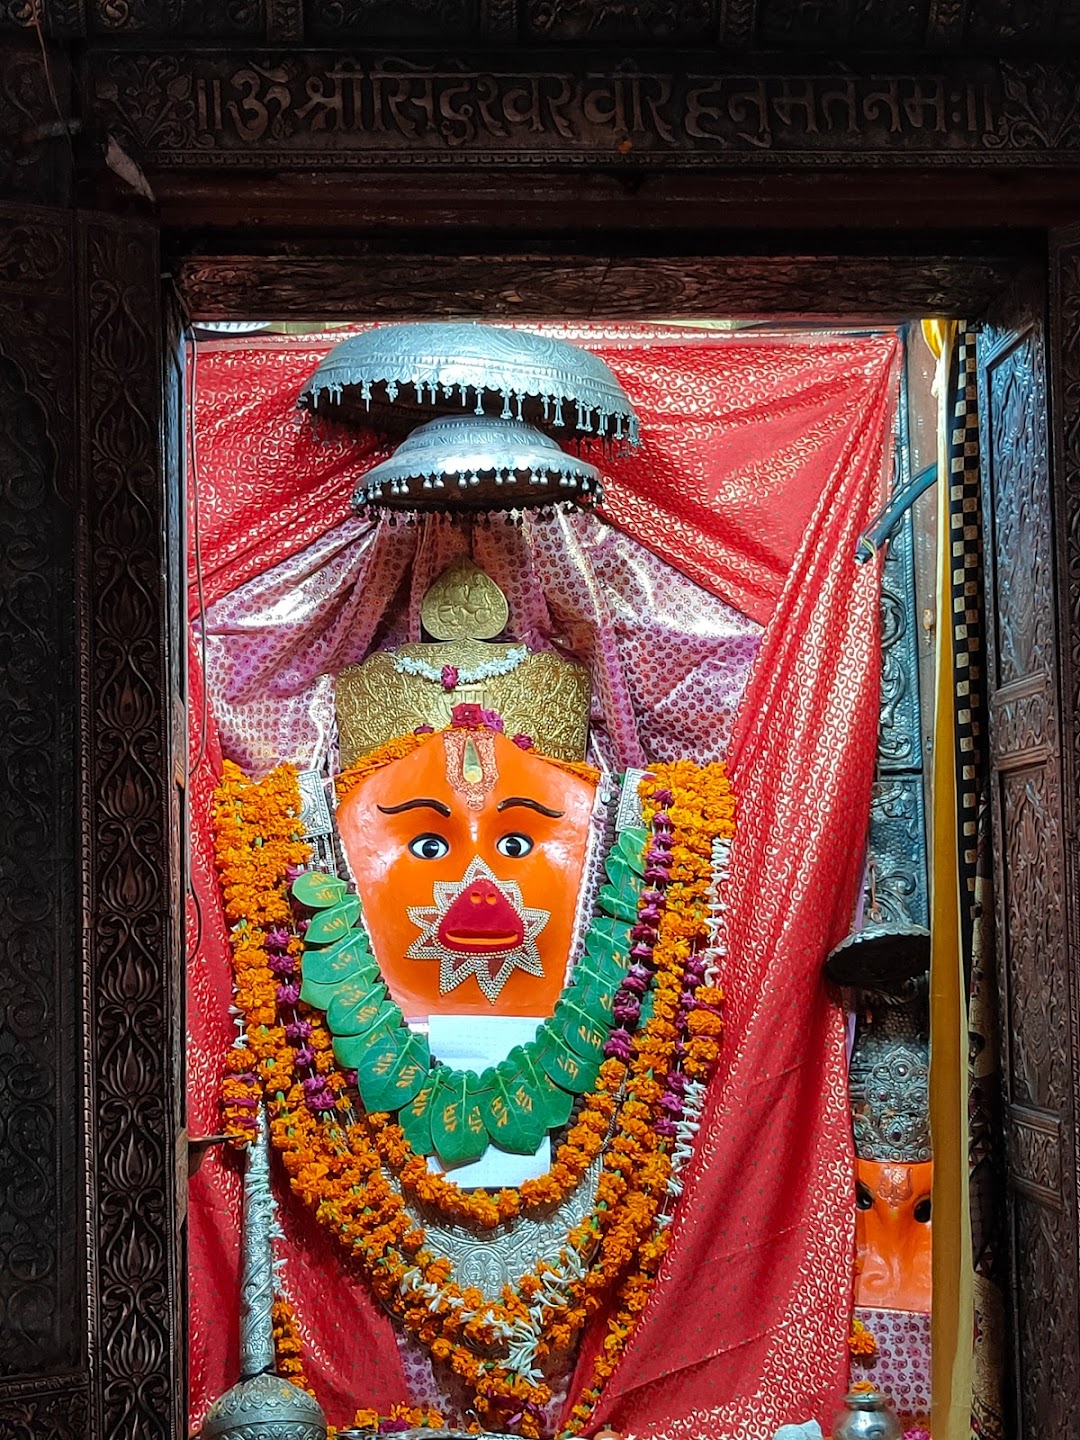 Shri Siddheshwar Veer Hanuman Mandir (Balaji temple)